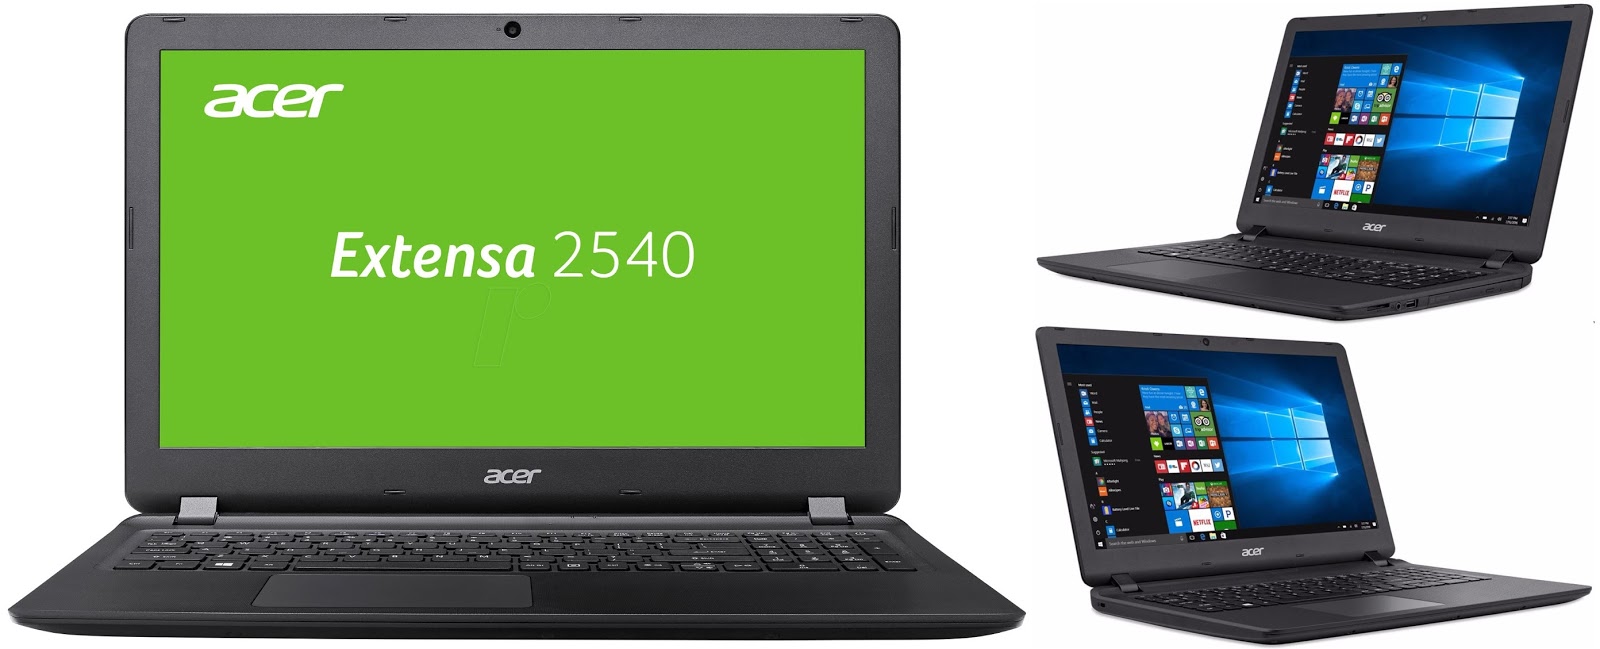 Acer Extensa 2540 33n4 External Reviews